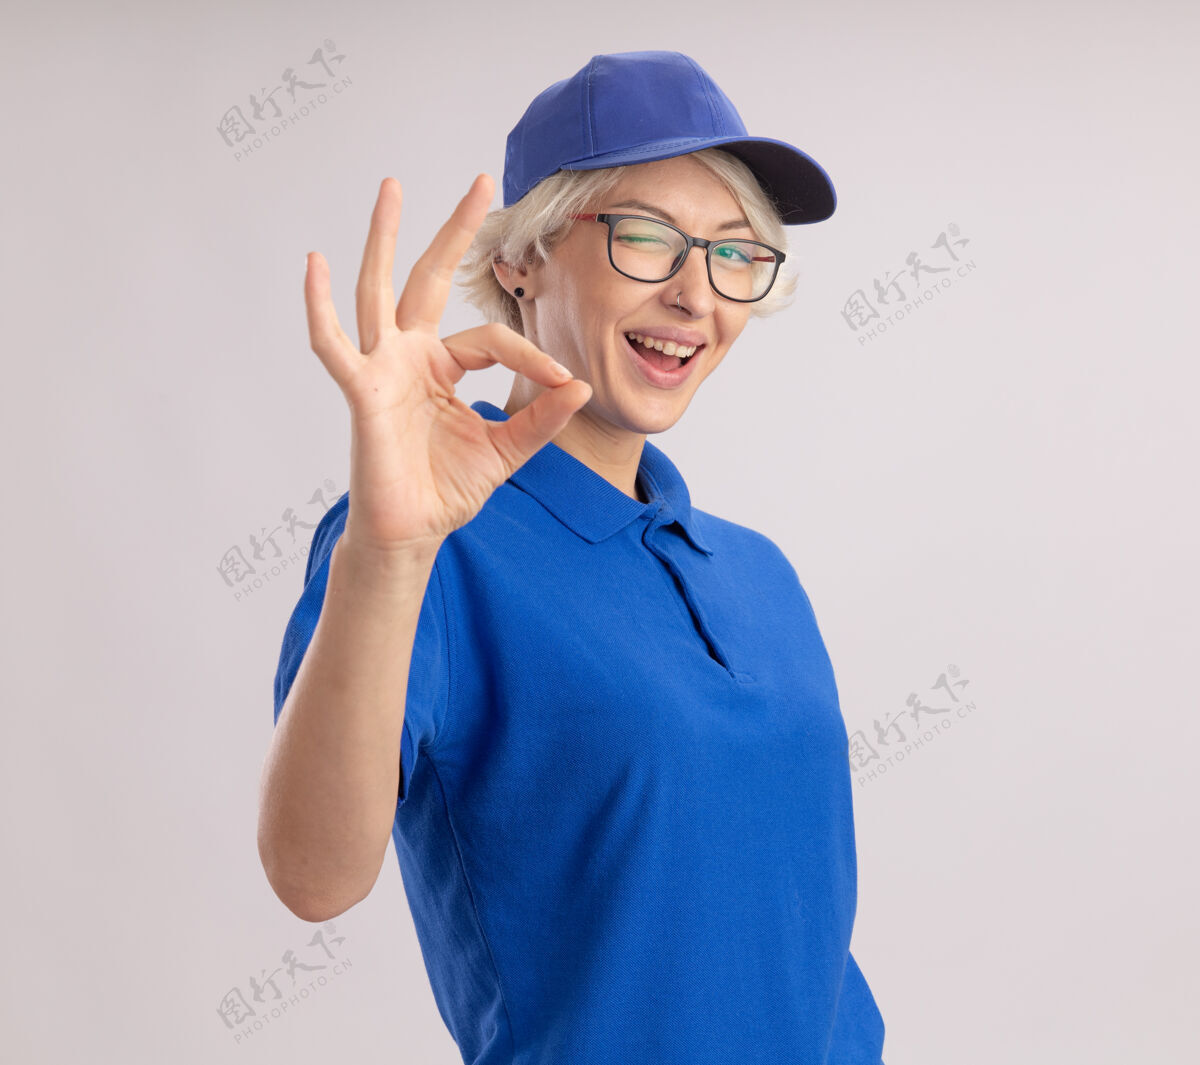 展示身穿蓝色制服 戴着帽子的年轻送货员 面带微笑 眨眼着 白墙上挂着“ok”的牌子眨眼站着女人